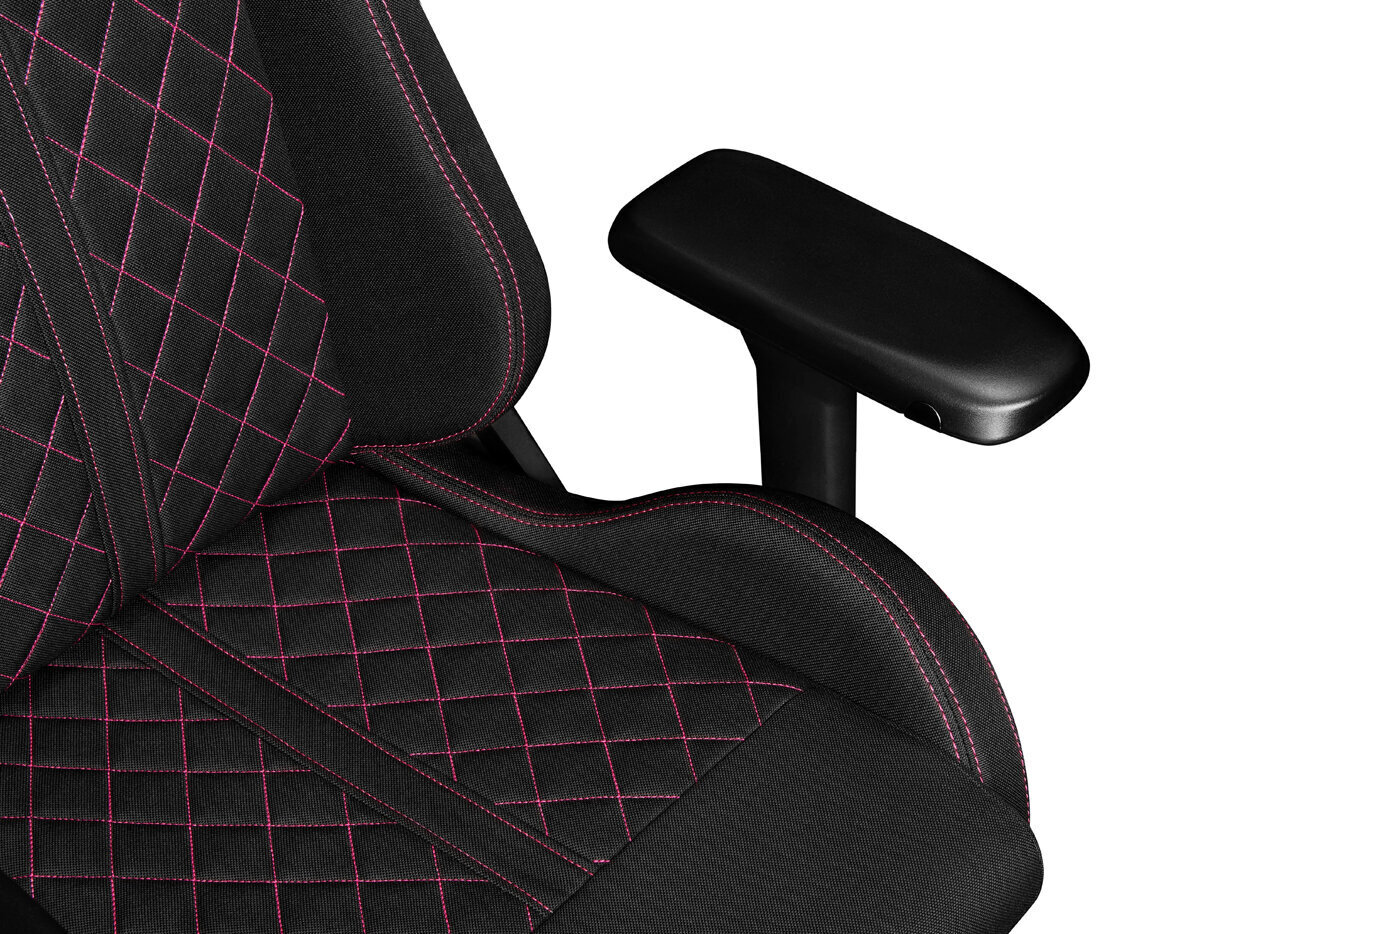 Kompiuterio kėdė Yumisu 2050 žaidėjams, medžiaginis apmušalas, juodos ir rožinės spalvos kaina ir informacija | Biuro kėdės | pigu.lt